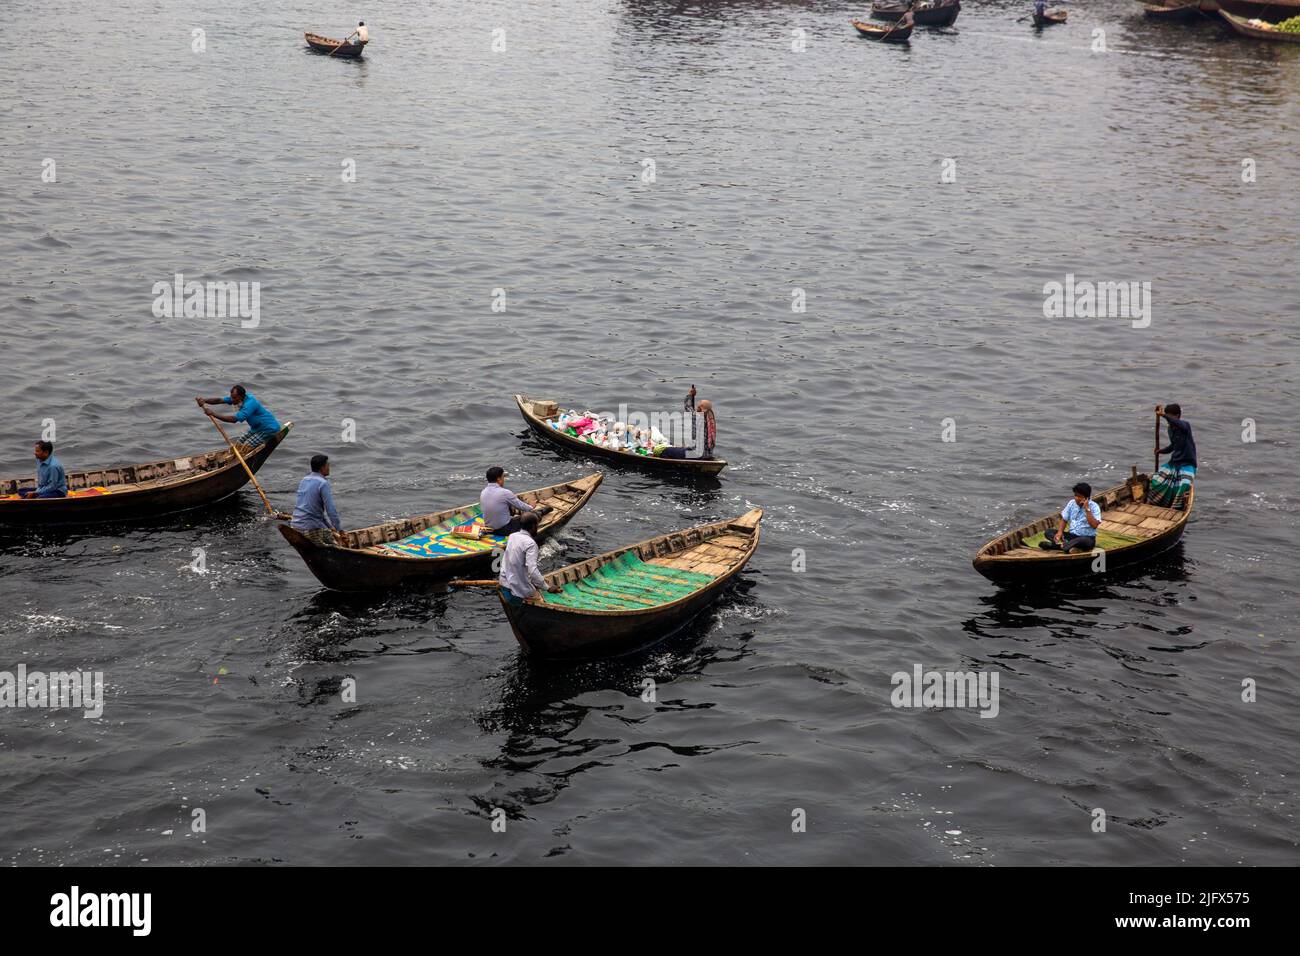 Bateau à passagers sur le fleuve buriganga, Dhaka, Bangladesh. Banque D'Images